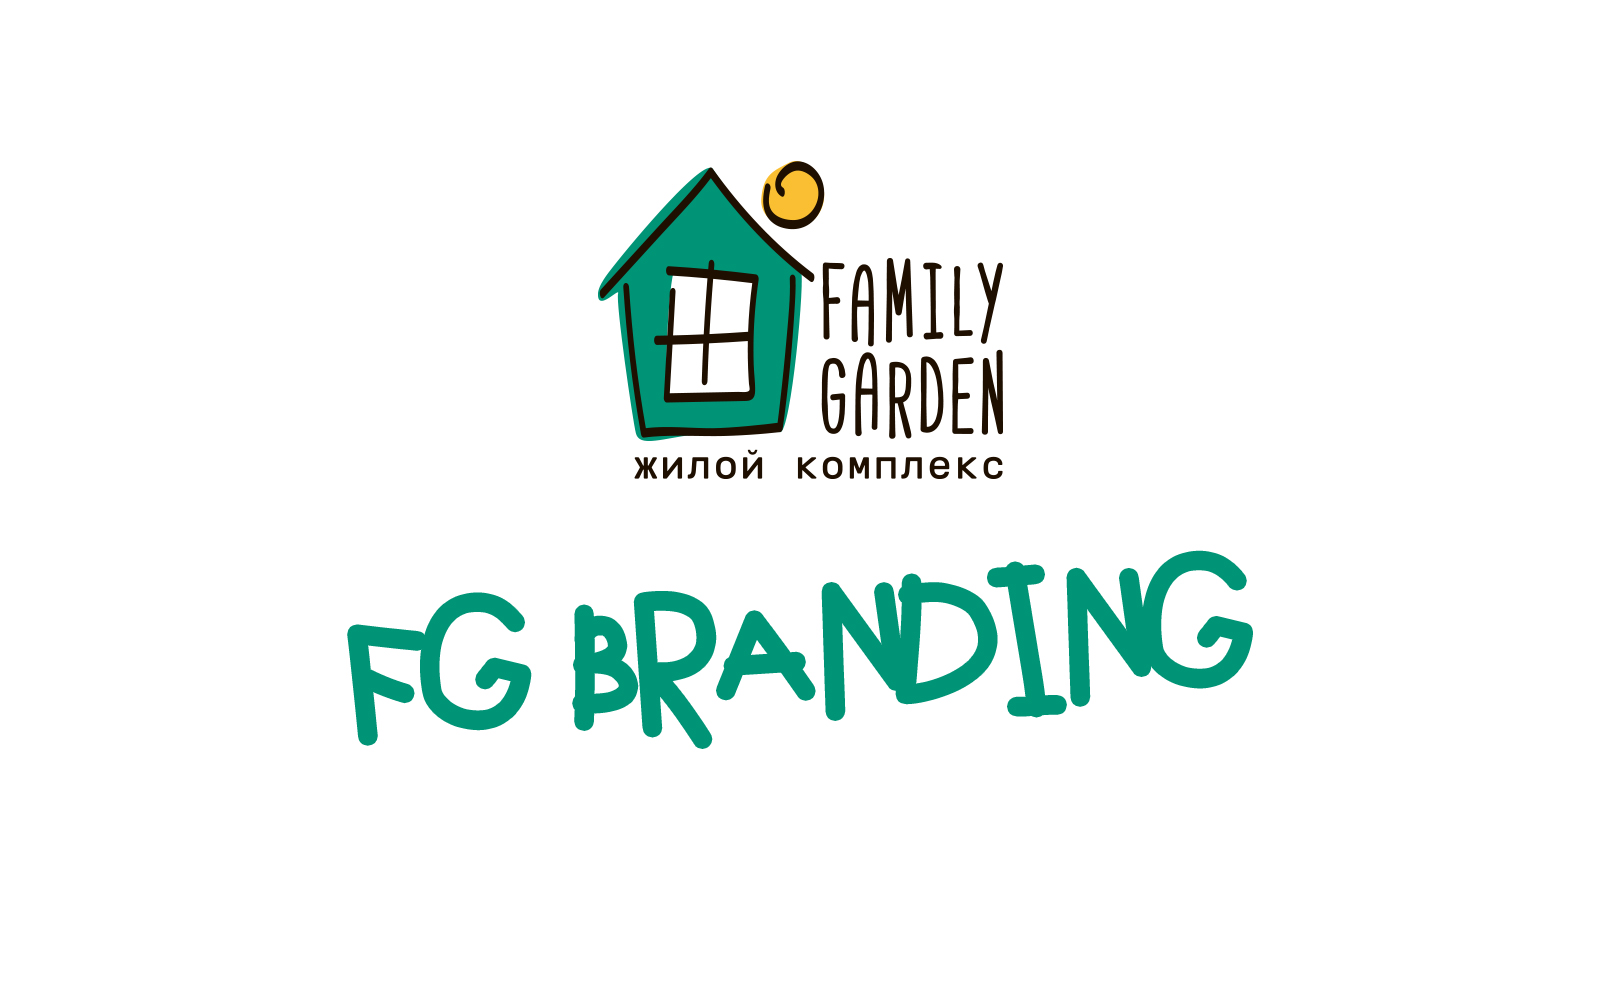 Family Garden Branding